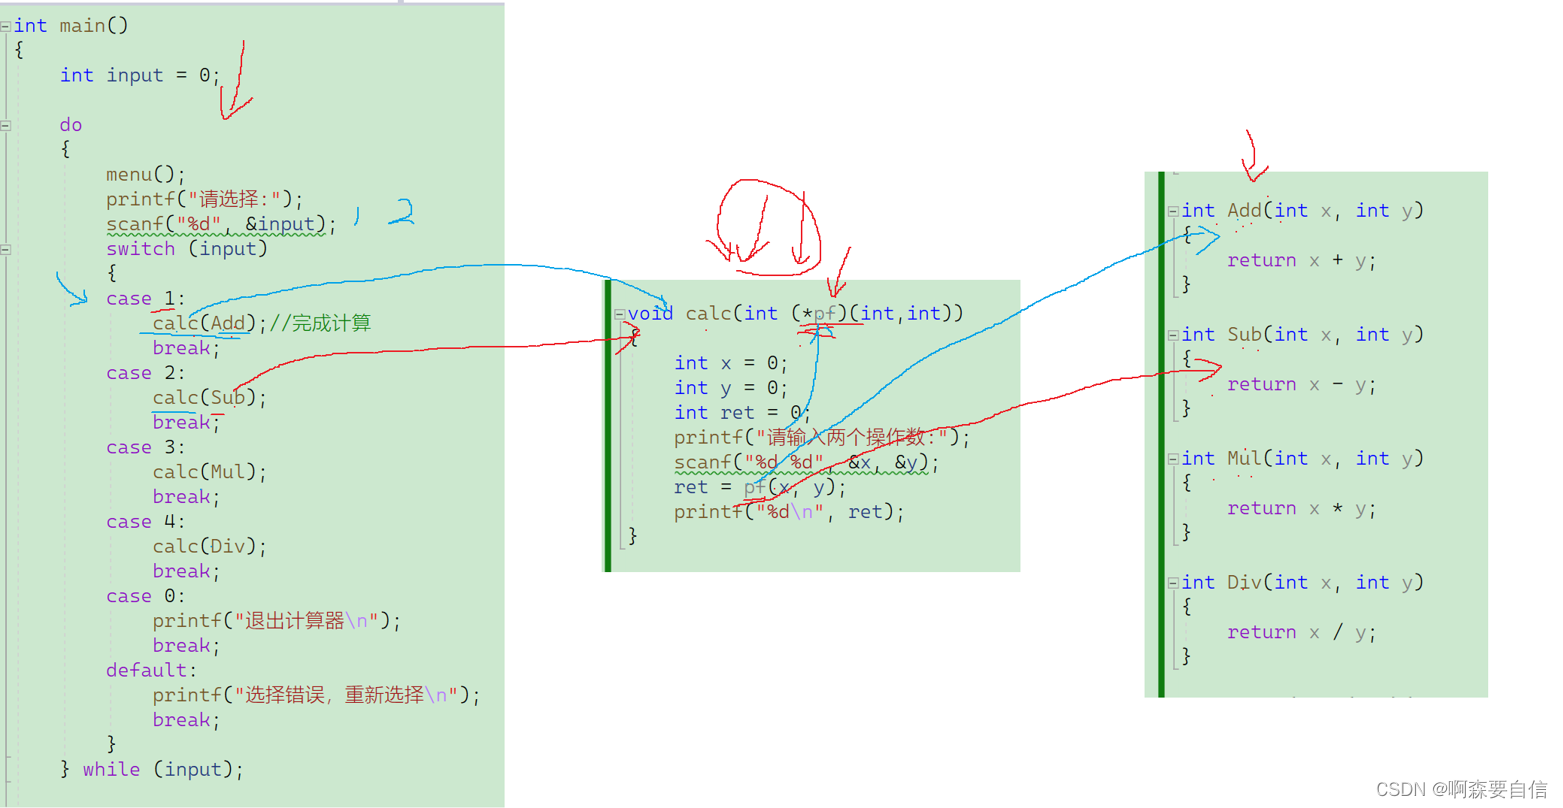 【C指针（五）】6种转移表实现整合longjmp()/setjmp()函数和qsort函数详解分析&&模拟实现3